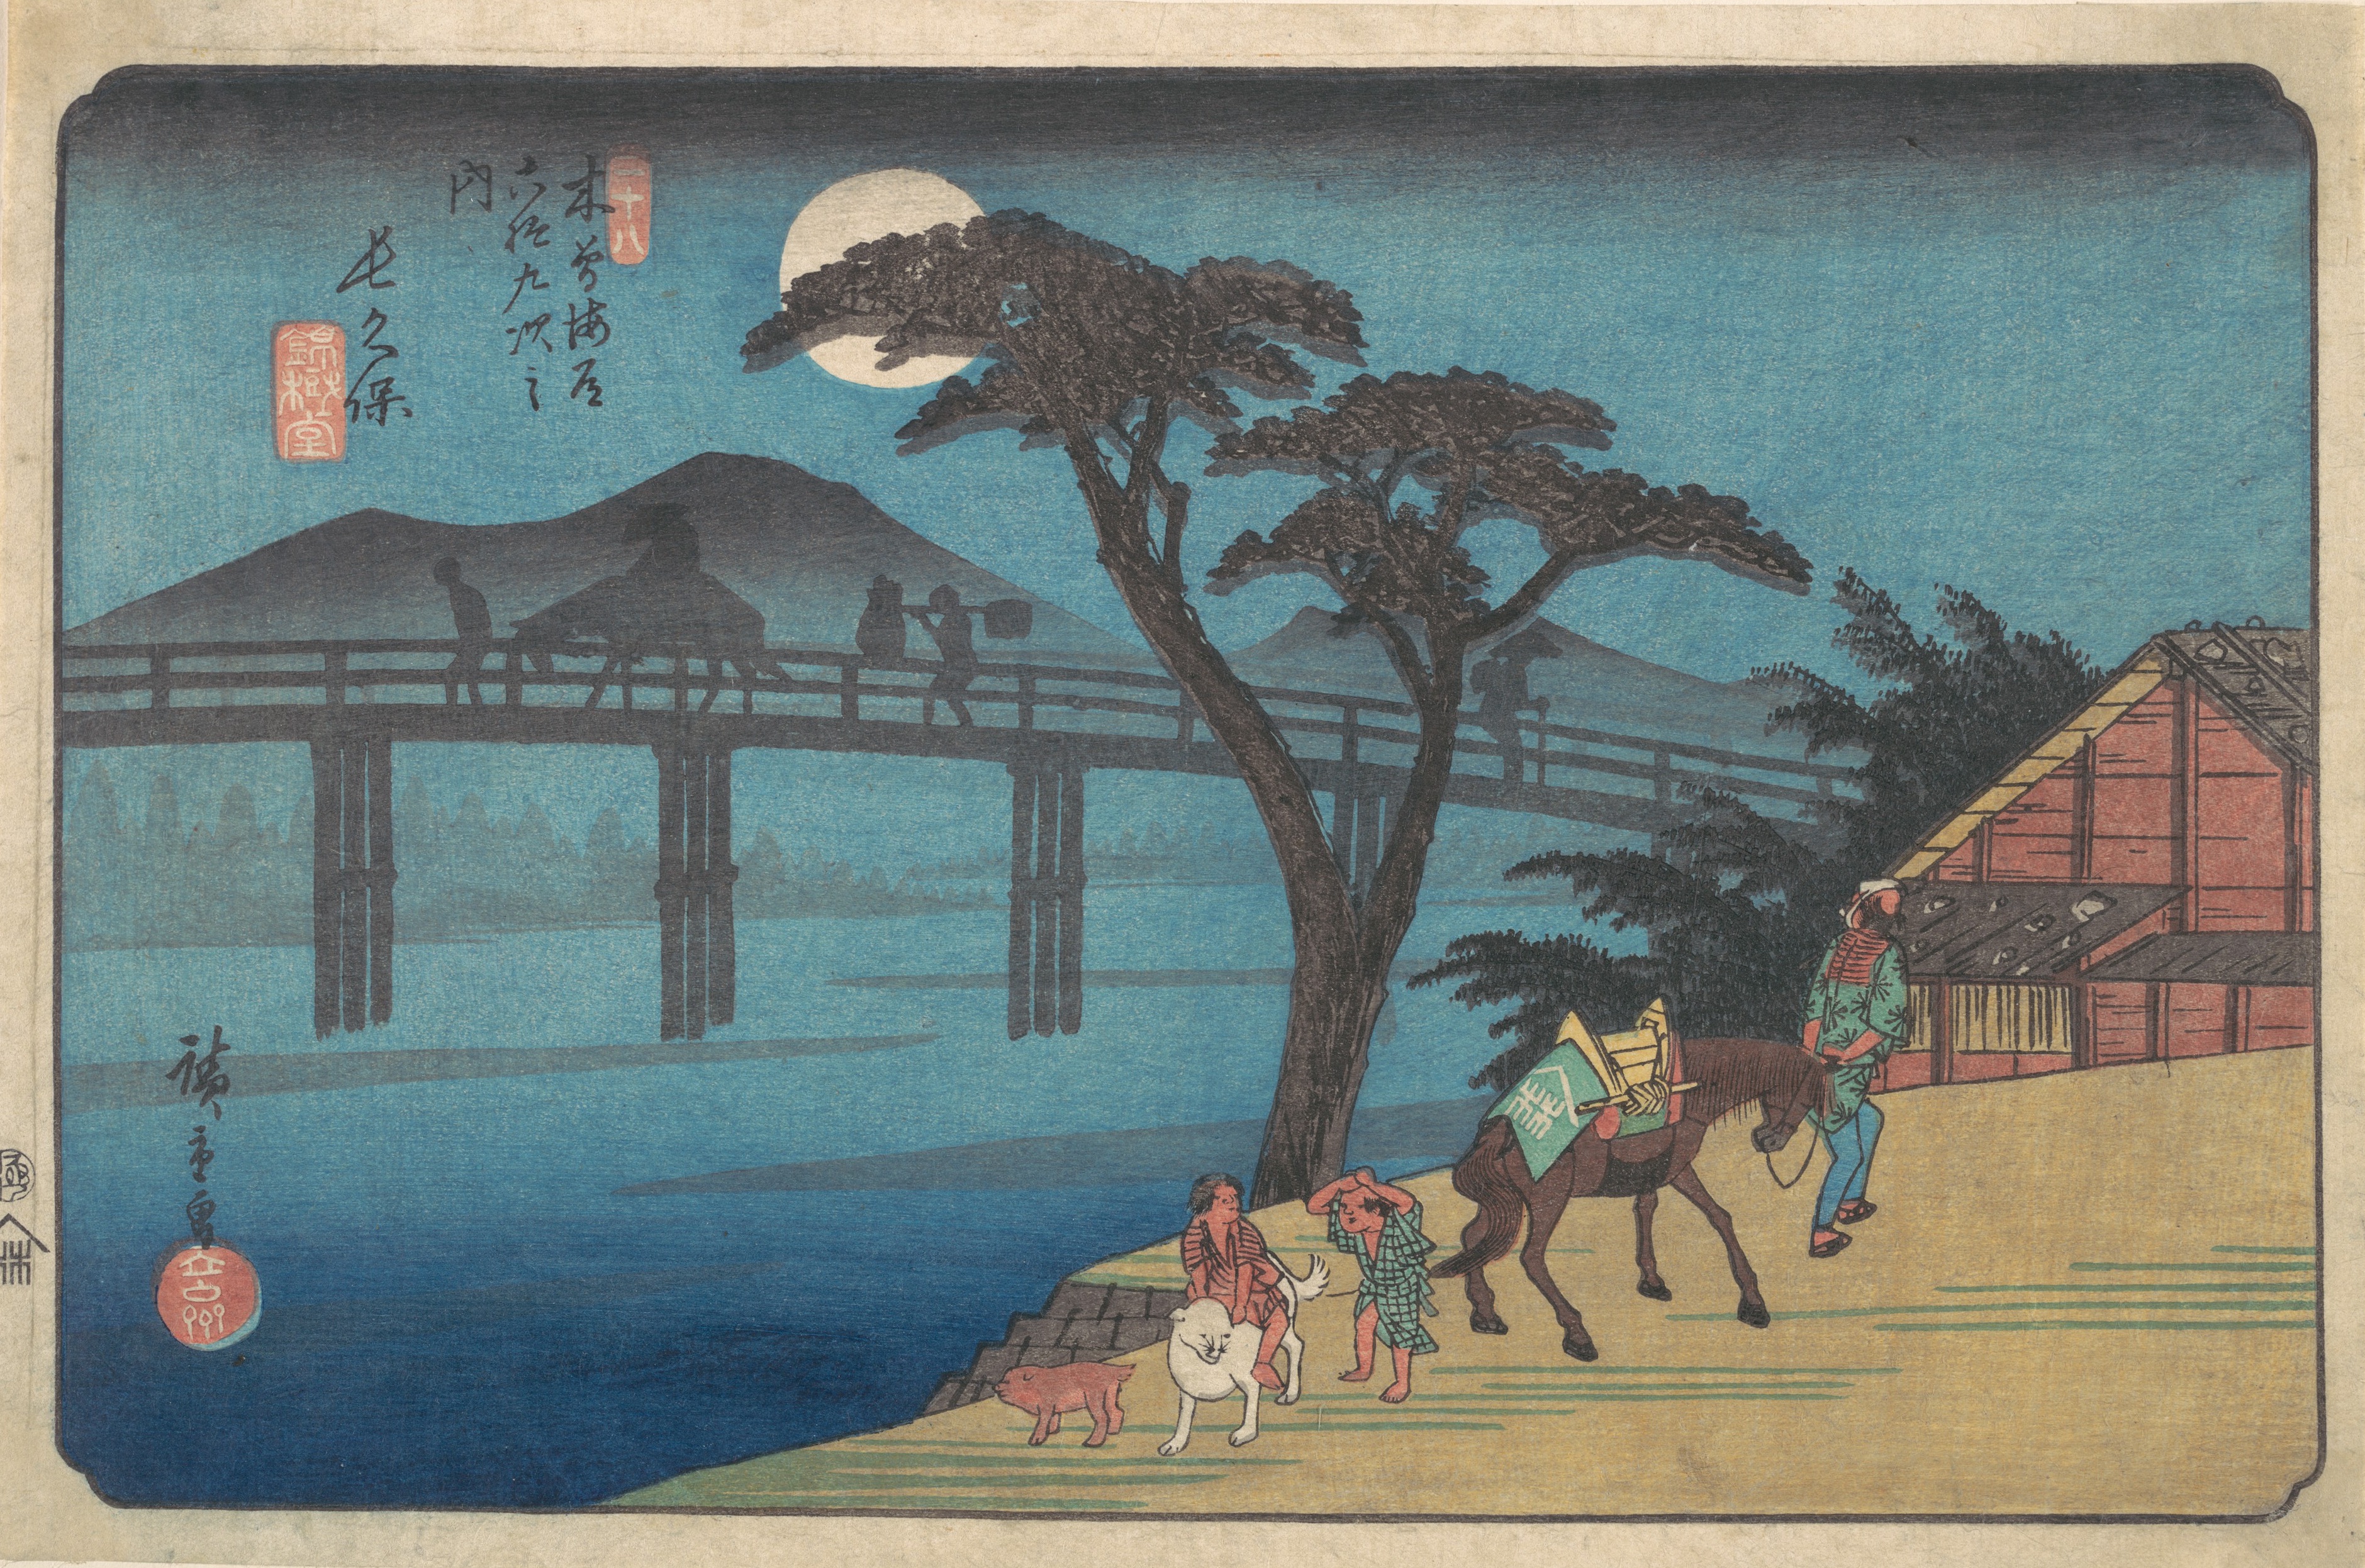 长久保宿 by 安藤广重  - ca. 1836 